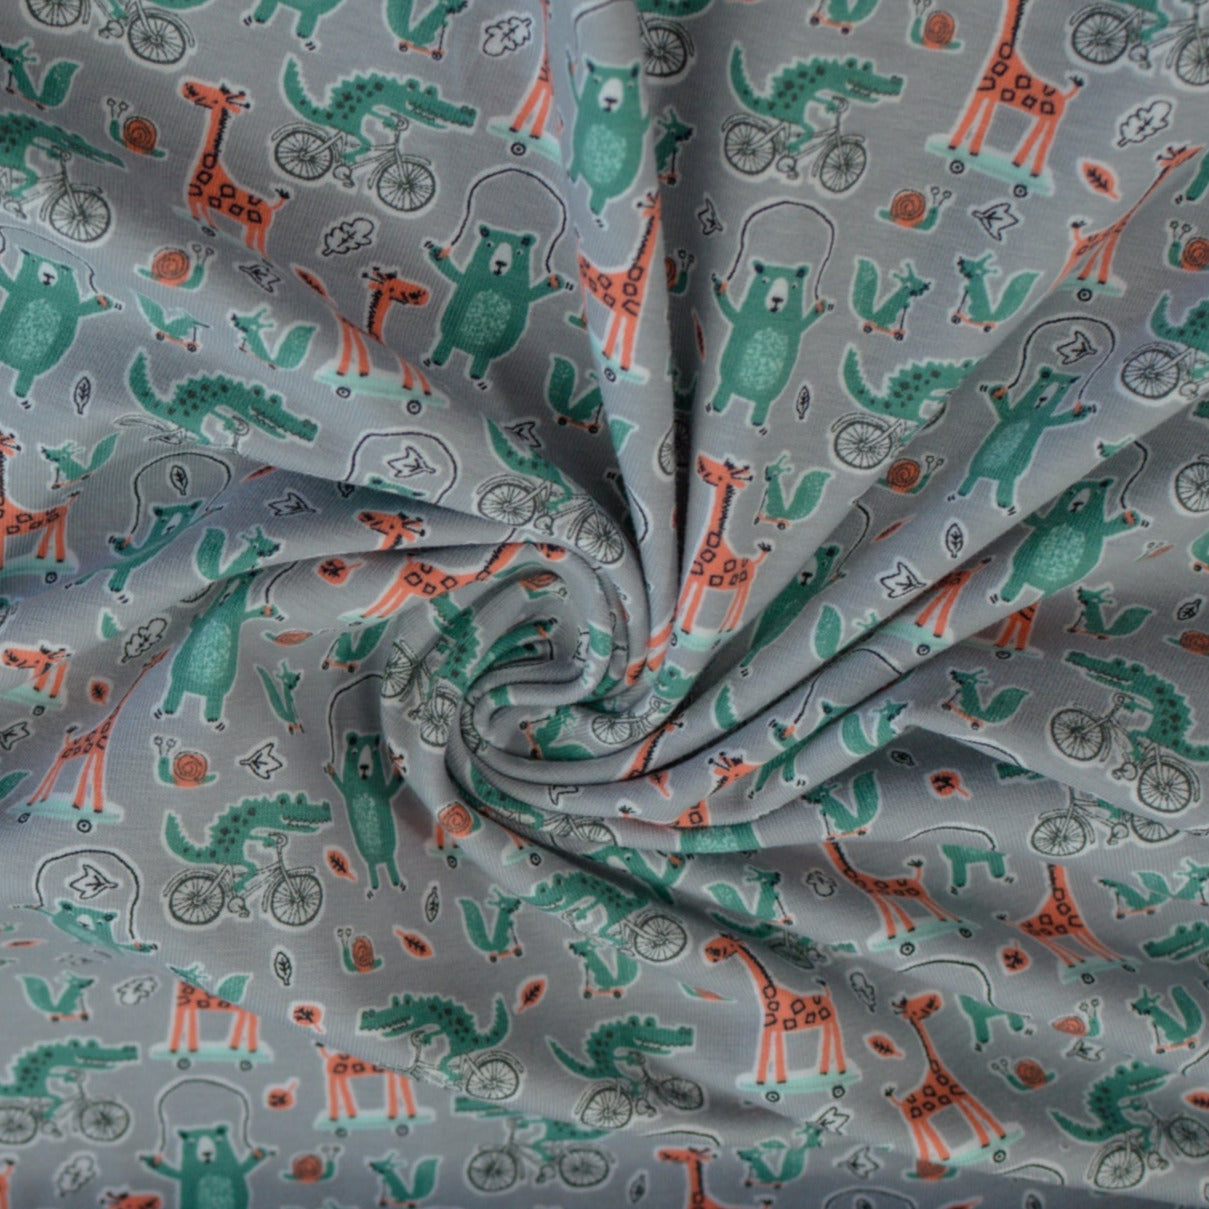 Baumwolljersey aus Schweden - Zootiere türkisgrün auf grau Fabric poshpinks